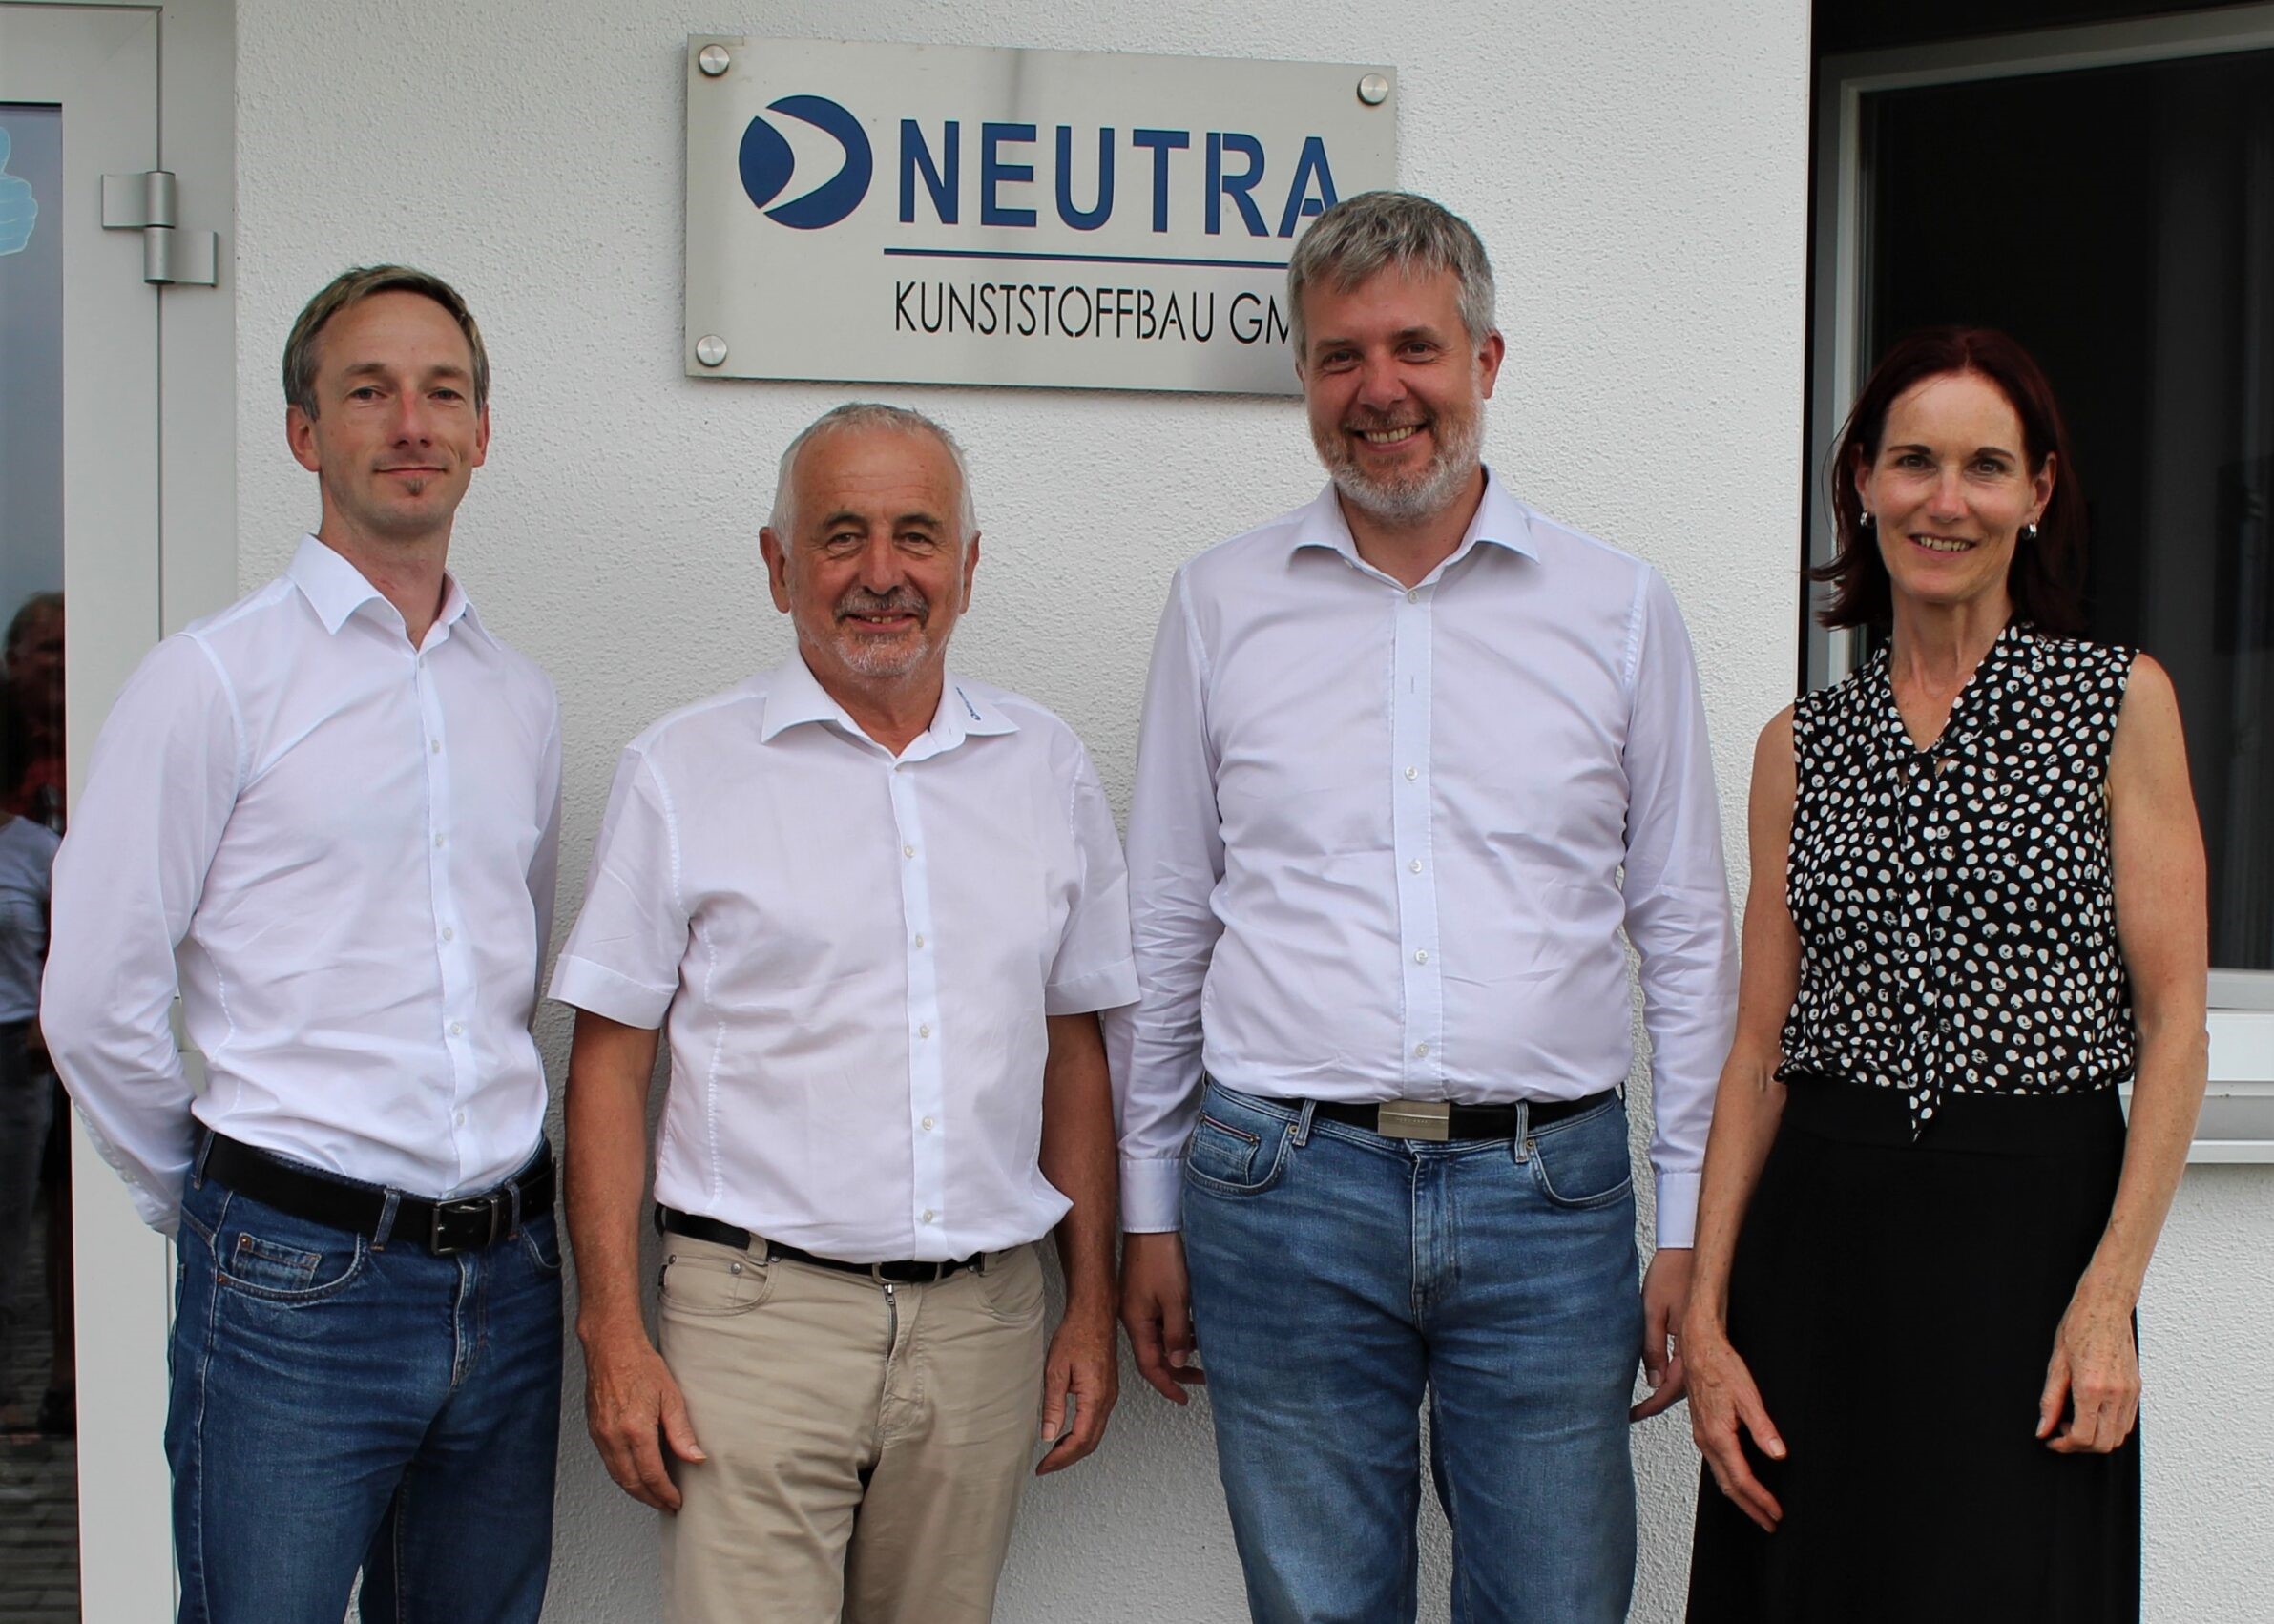 Neutra Kunststoffbau News employees Teams